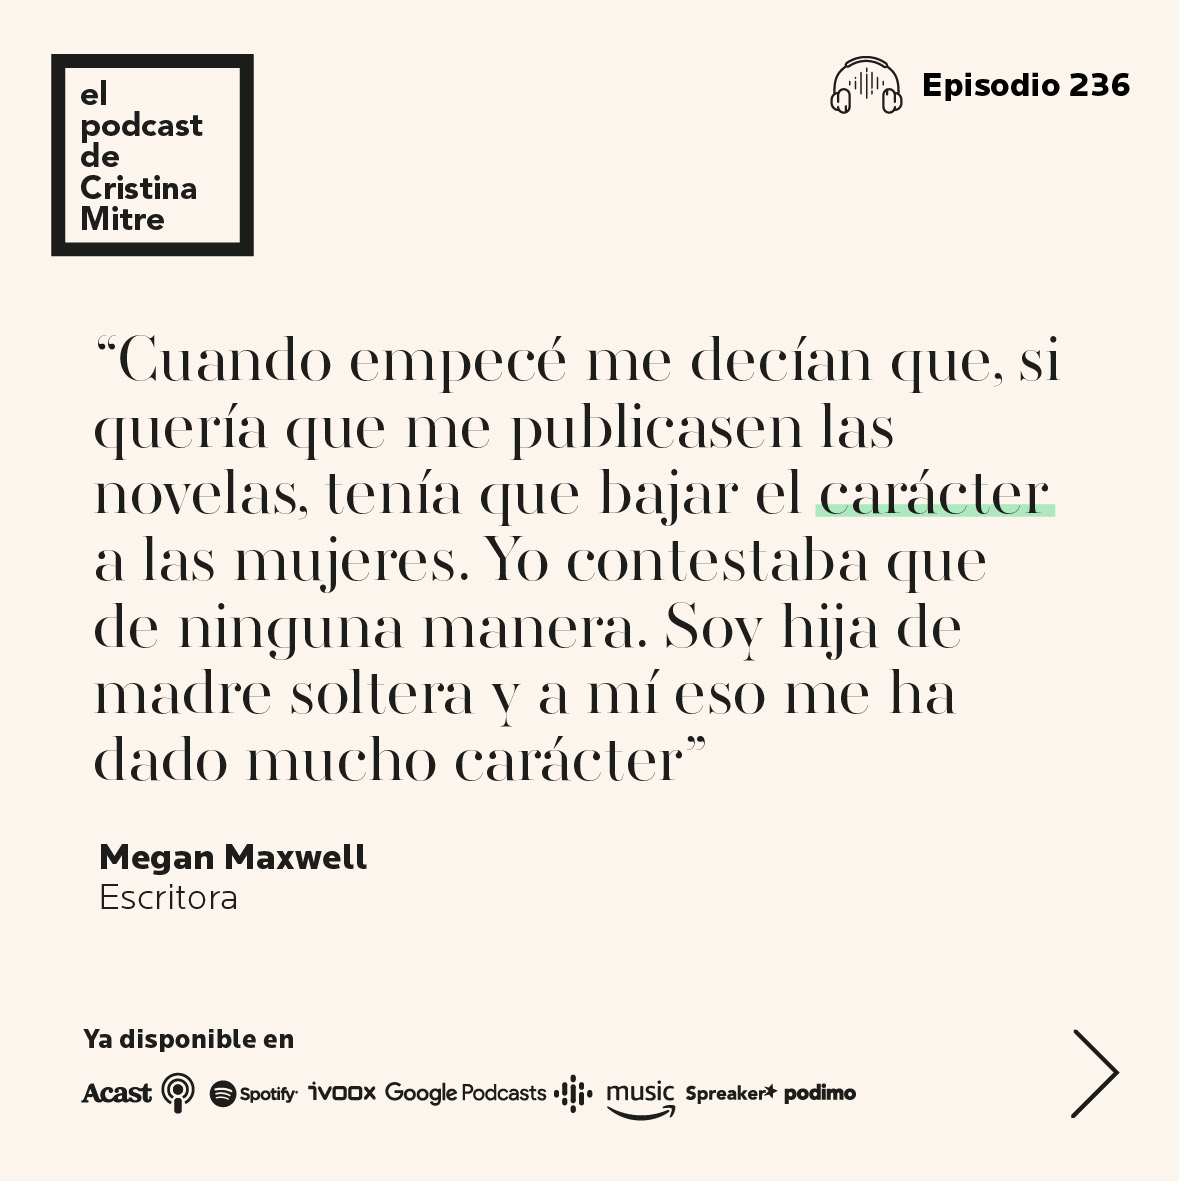 El podcast de Cristina Mitre literatura